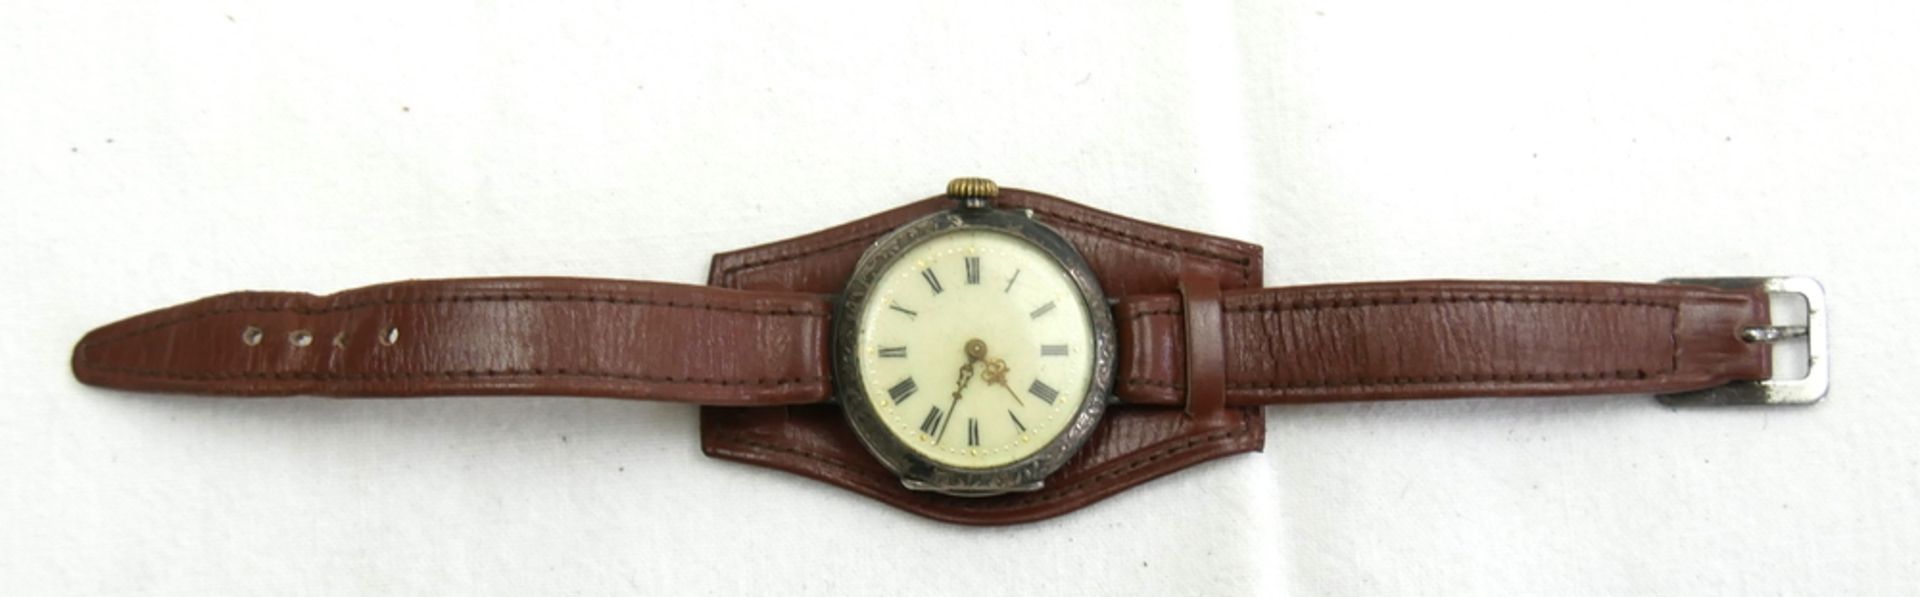 800er Silber Taschenuhr umfunktioniert zur Armbanduhr (Glas lose). Funktion geprüft.